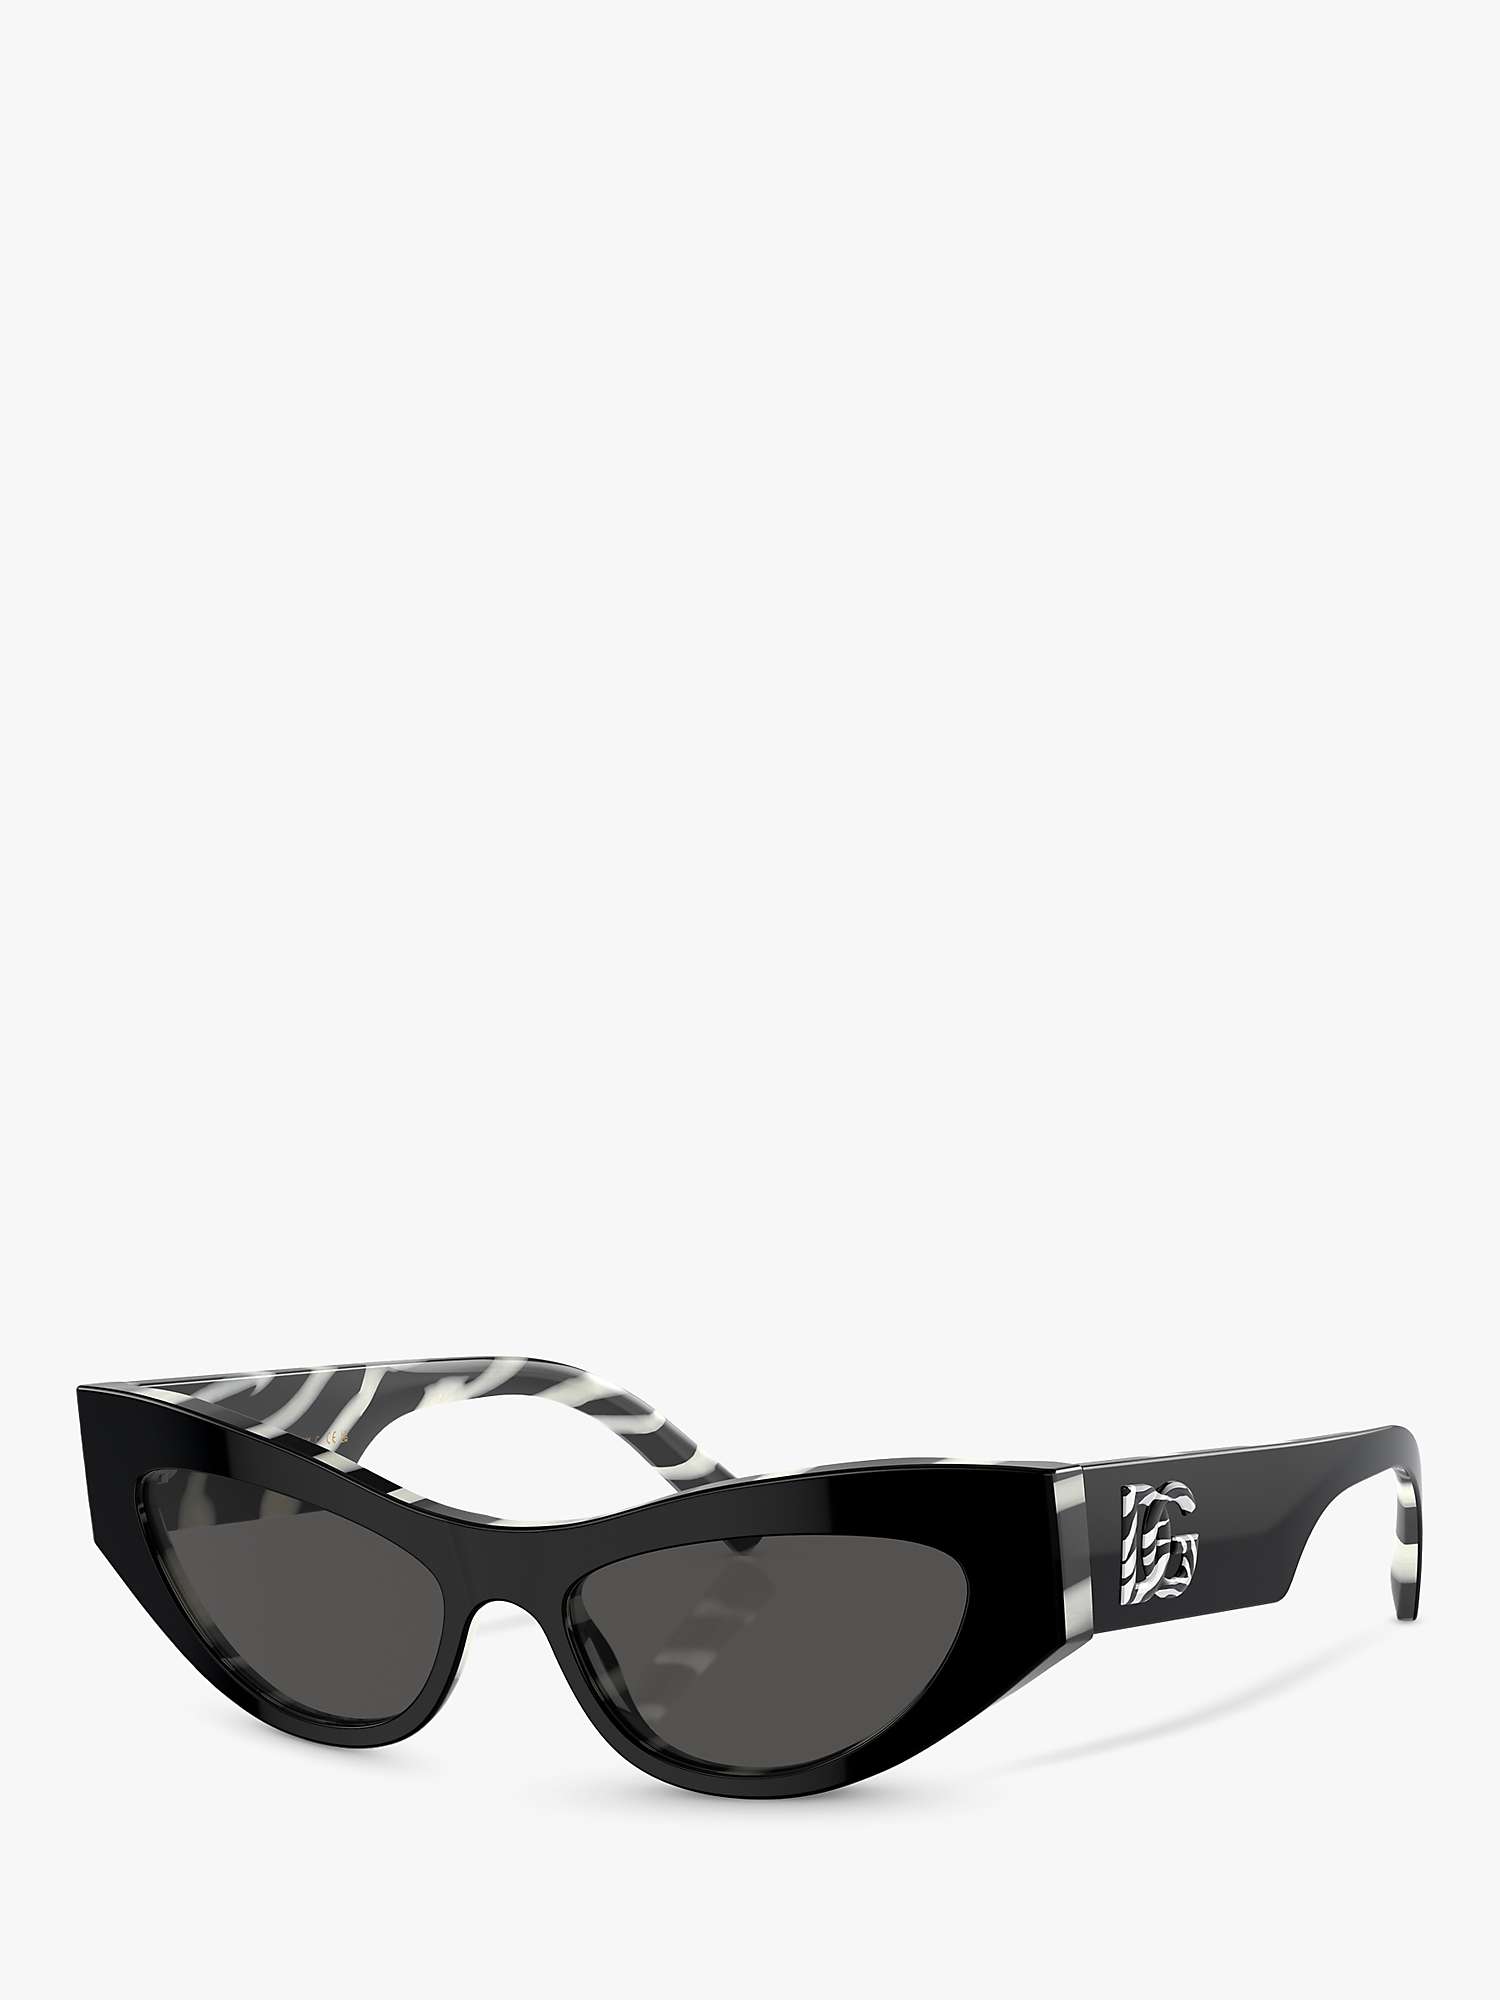 Buy Dolce & Gabbana DG4450 Women's Cat's Eye Sunglasses Online at johnlewis.com